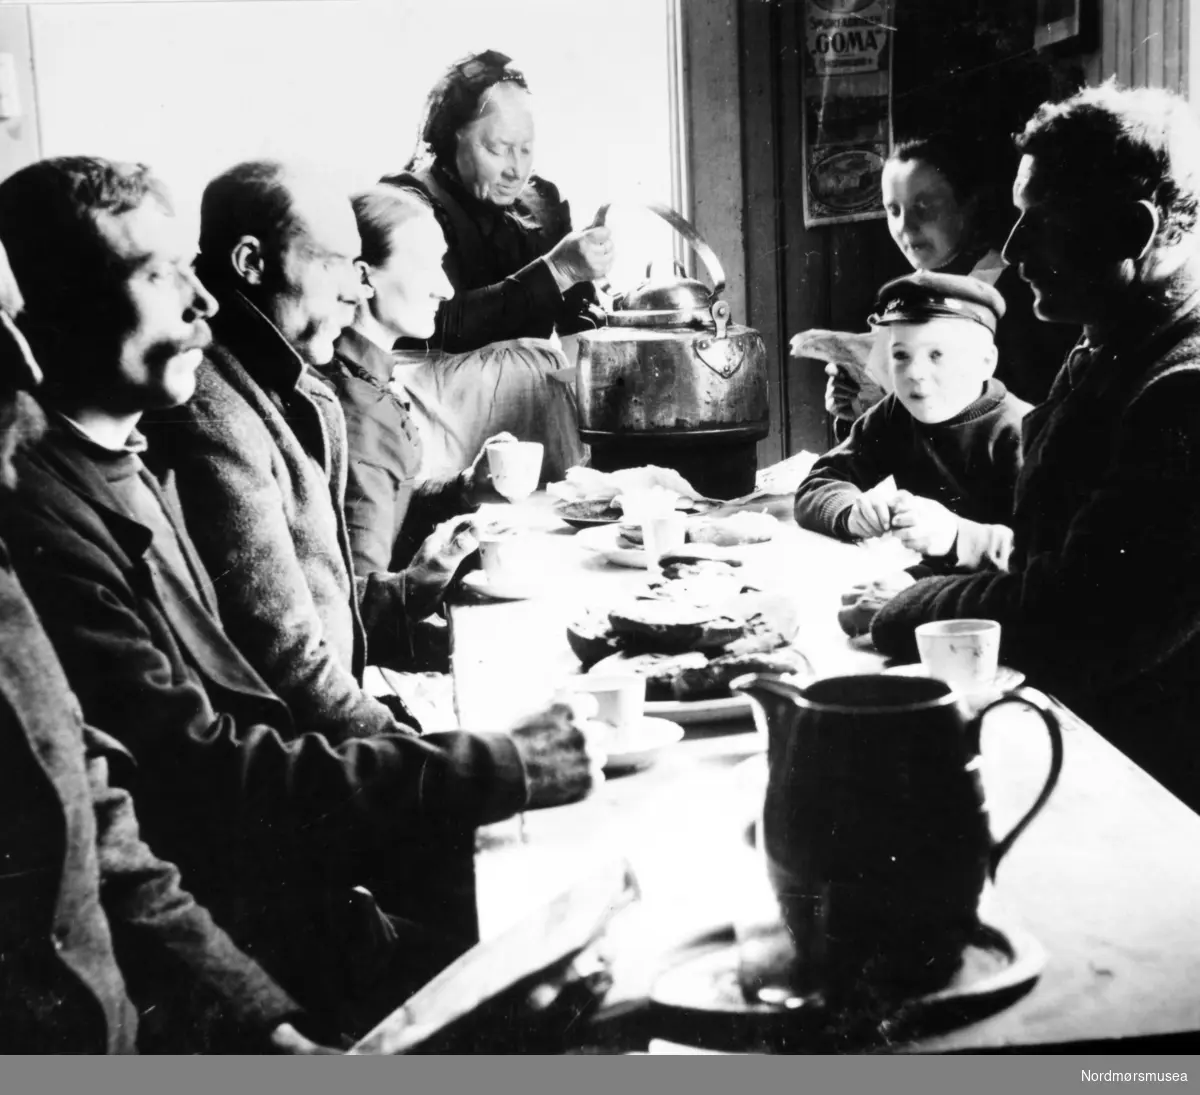 Et interiørfoto fra Marit Fladvads kafe, hvor vi ser en gruppe personer sittende rundt et matbord, mens Marit Flatvad tar imot bestillingen.Kafeen lå ved Fisketorget. Bildet er datert til 1890. Se også foto fra Gamle Kvernes Bygdemuseums fotosamling, med reg. nr.
GKB-25702.
Fra Nordmøre Museums fotosamlinger.
